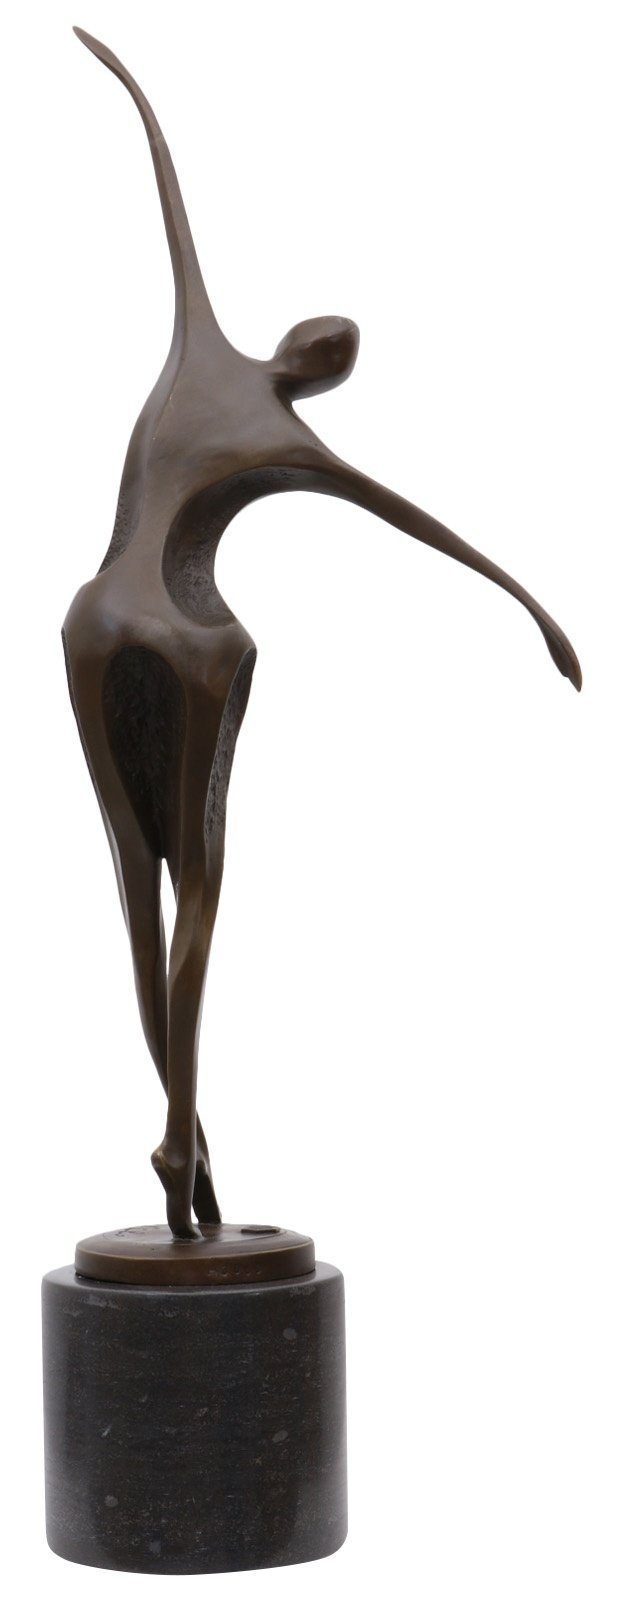 Aubaho Skulptur Bronzeskulptur Mann Tänzer im Bronze Figur Antik-Stil 57cm Statue